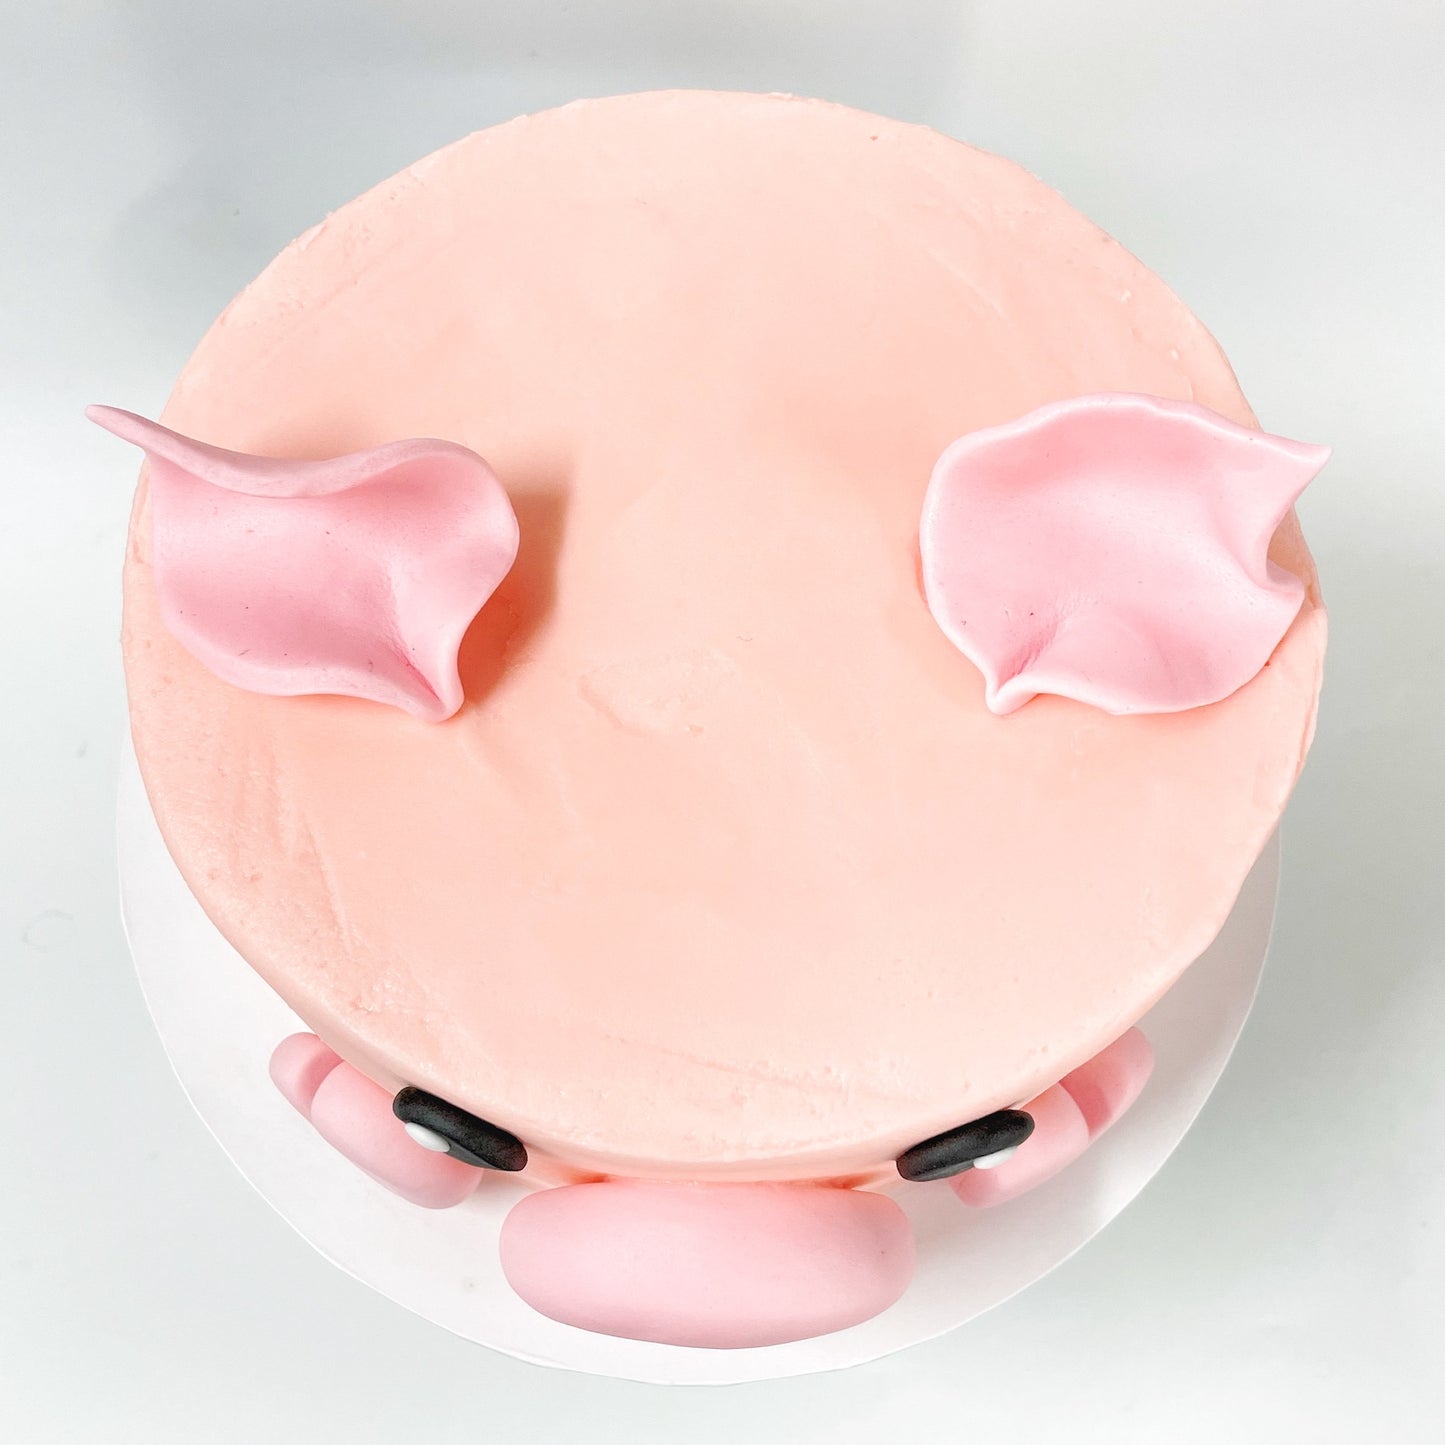 Peppa Pig Cake Kit, DIY Pig Cake, Farm Animal Cake, Miss Piggy Cake.